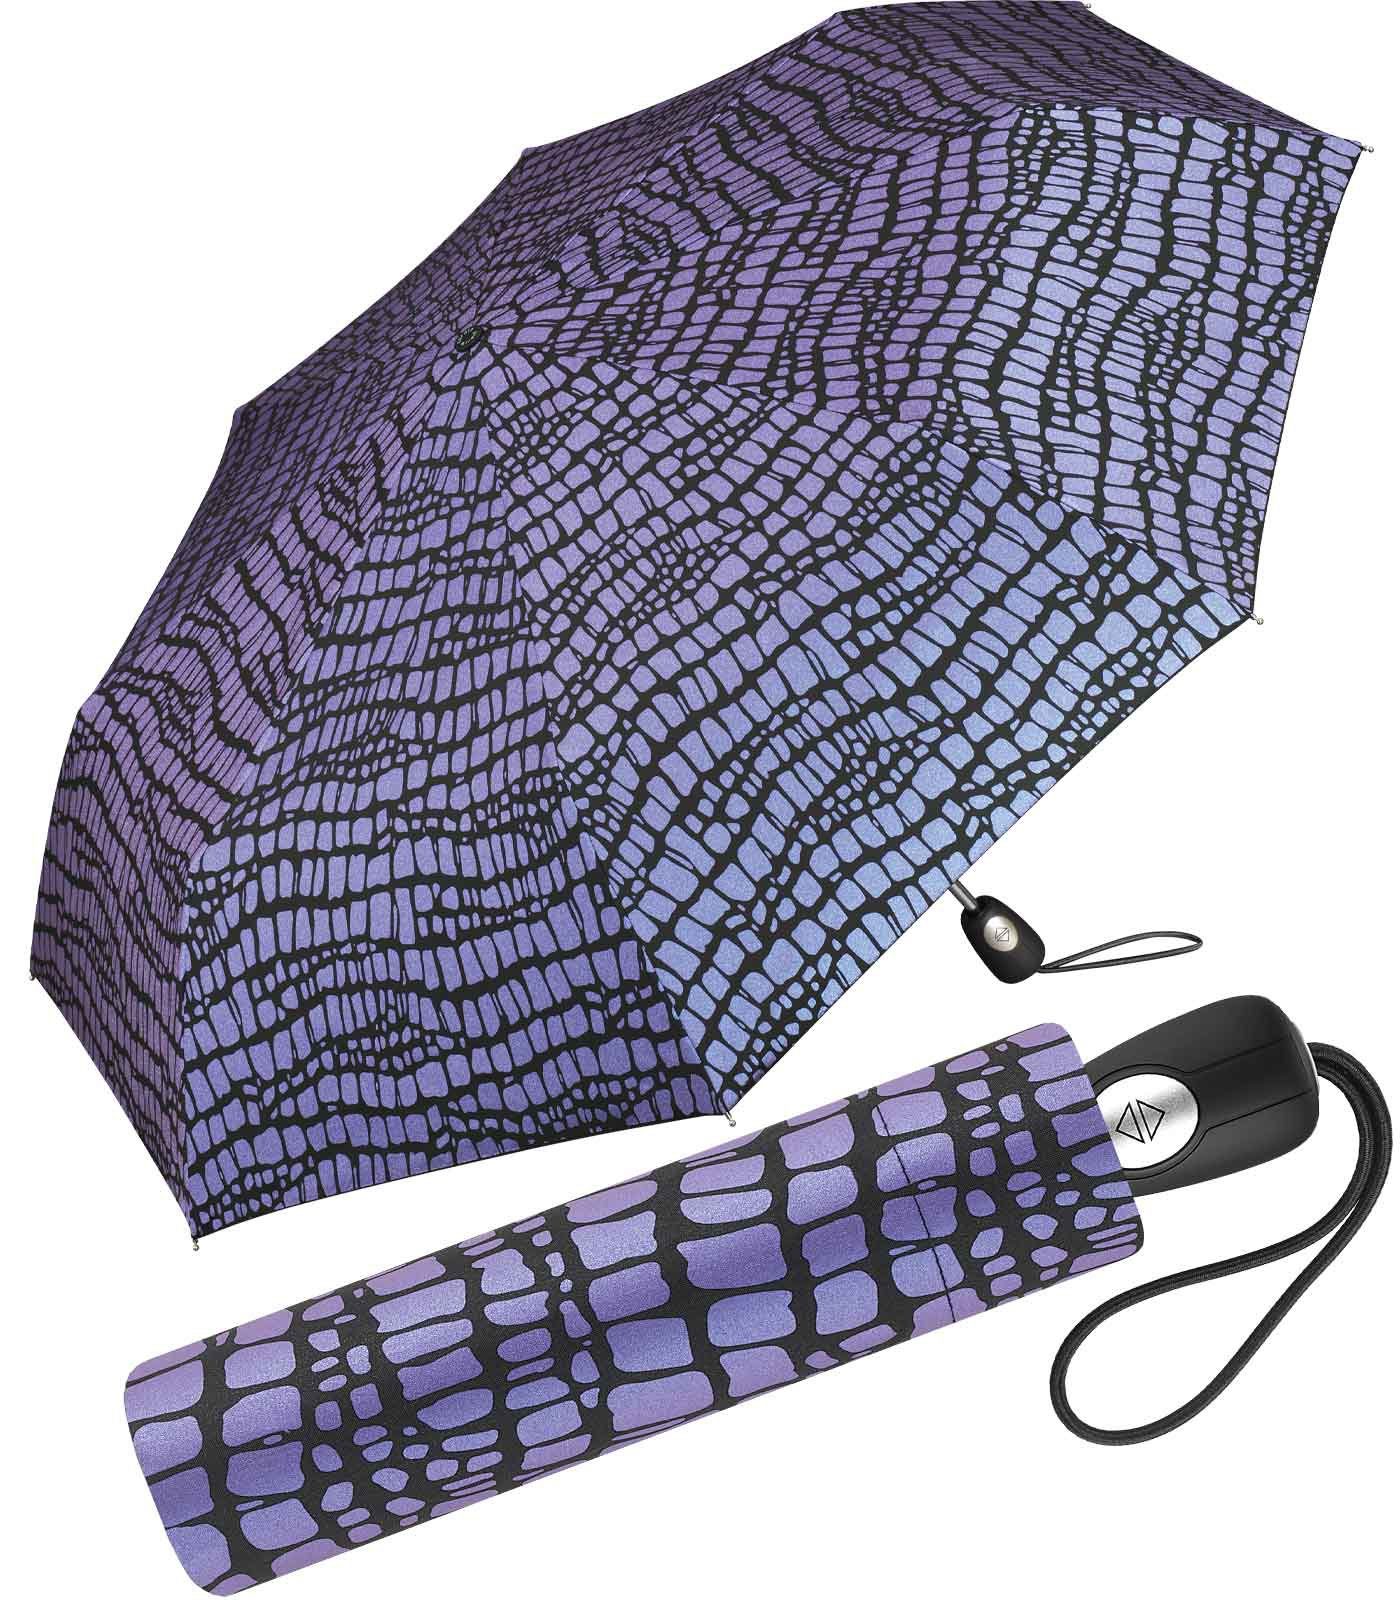 Auf-Zu-Automatik, Cardin mit Damen-Regenschirm Pierre Taschenregenschirm für Krokodil-Optik schöner den Regenschirm